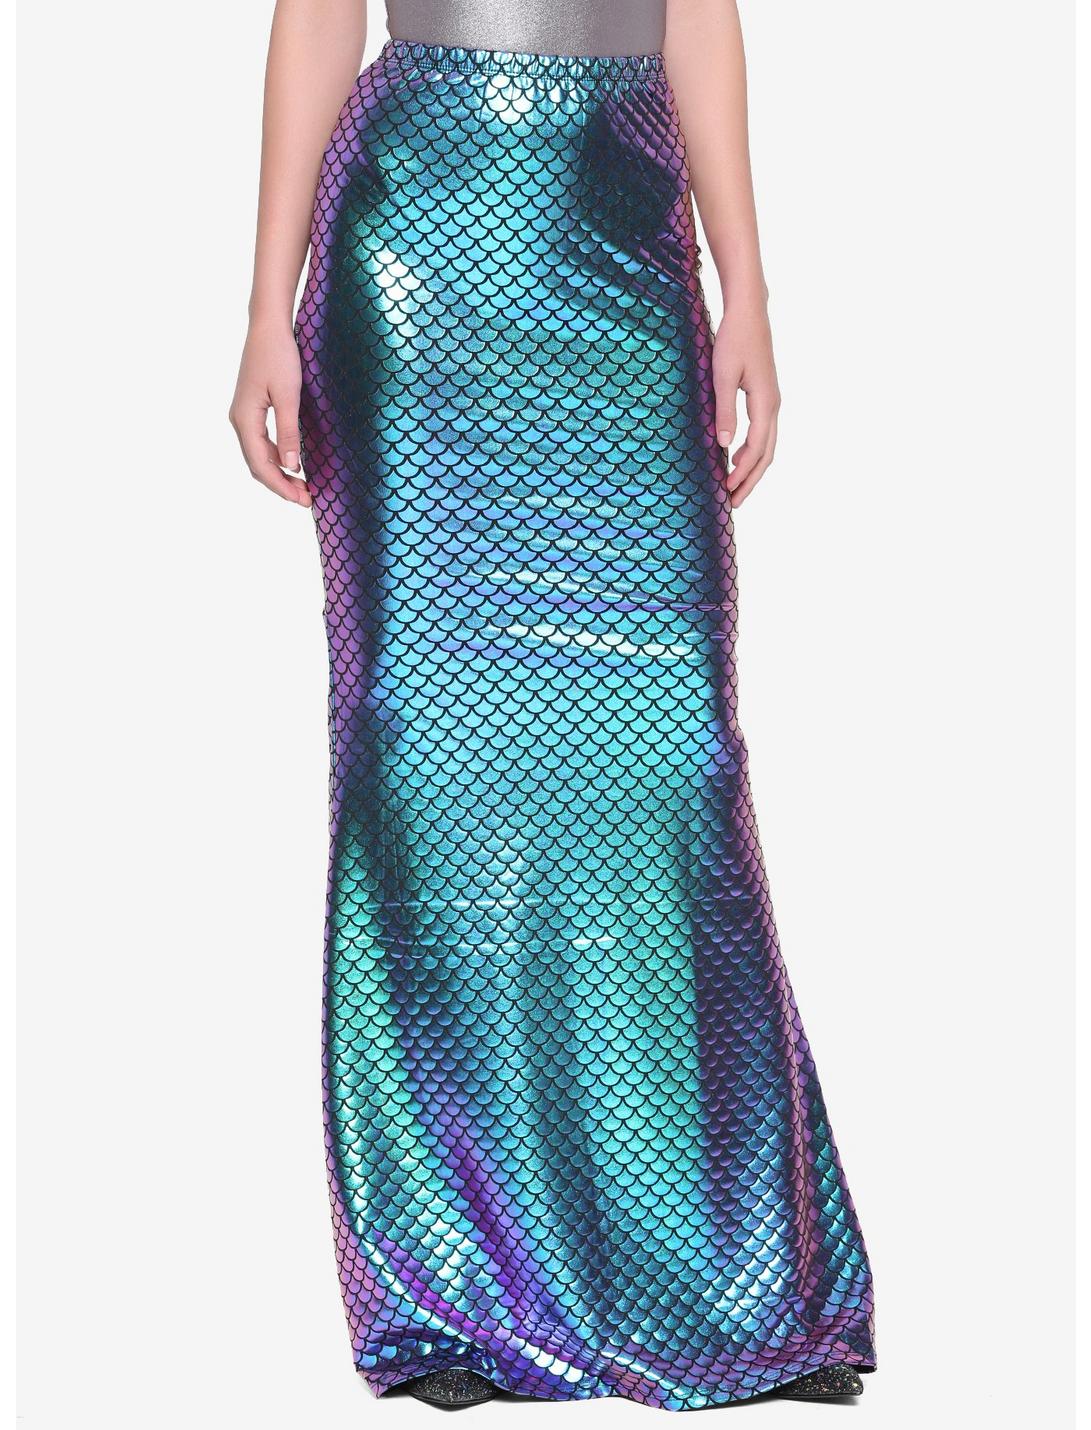 Iridescent Scale Mermaid Skirt, MULTI, hi-res